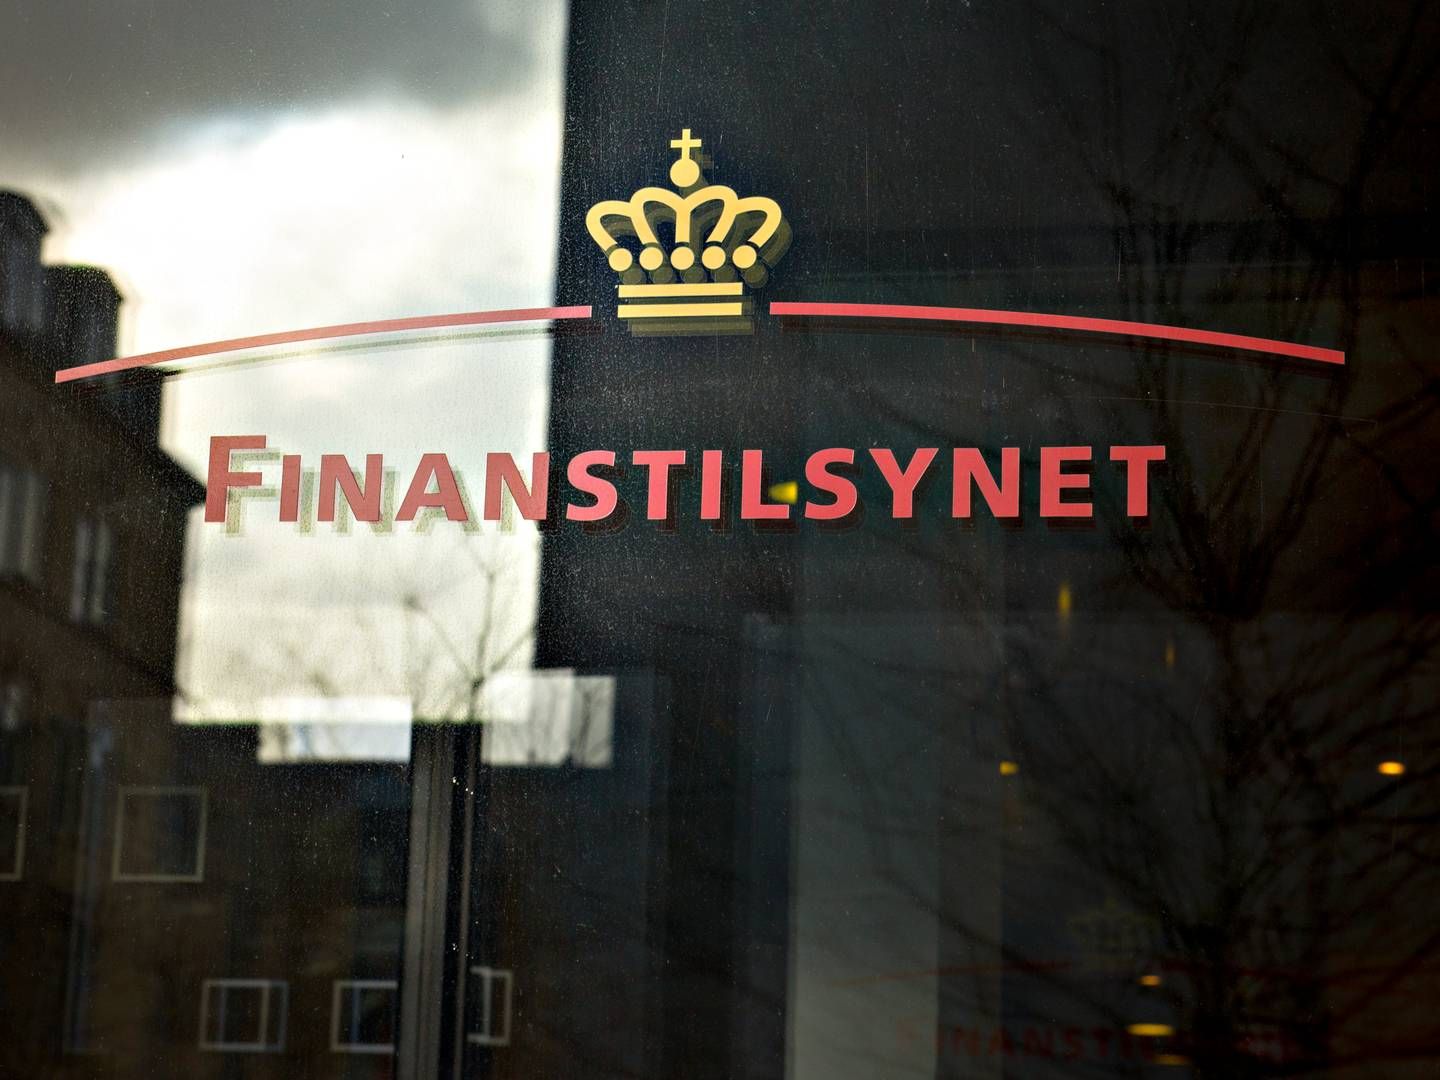 Banker har ydet balanceret rådgivning i tiden med negative renter, konkluderer Finanstilsynet i ny rapport. | Foto: Lars Krabbe